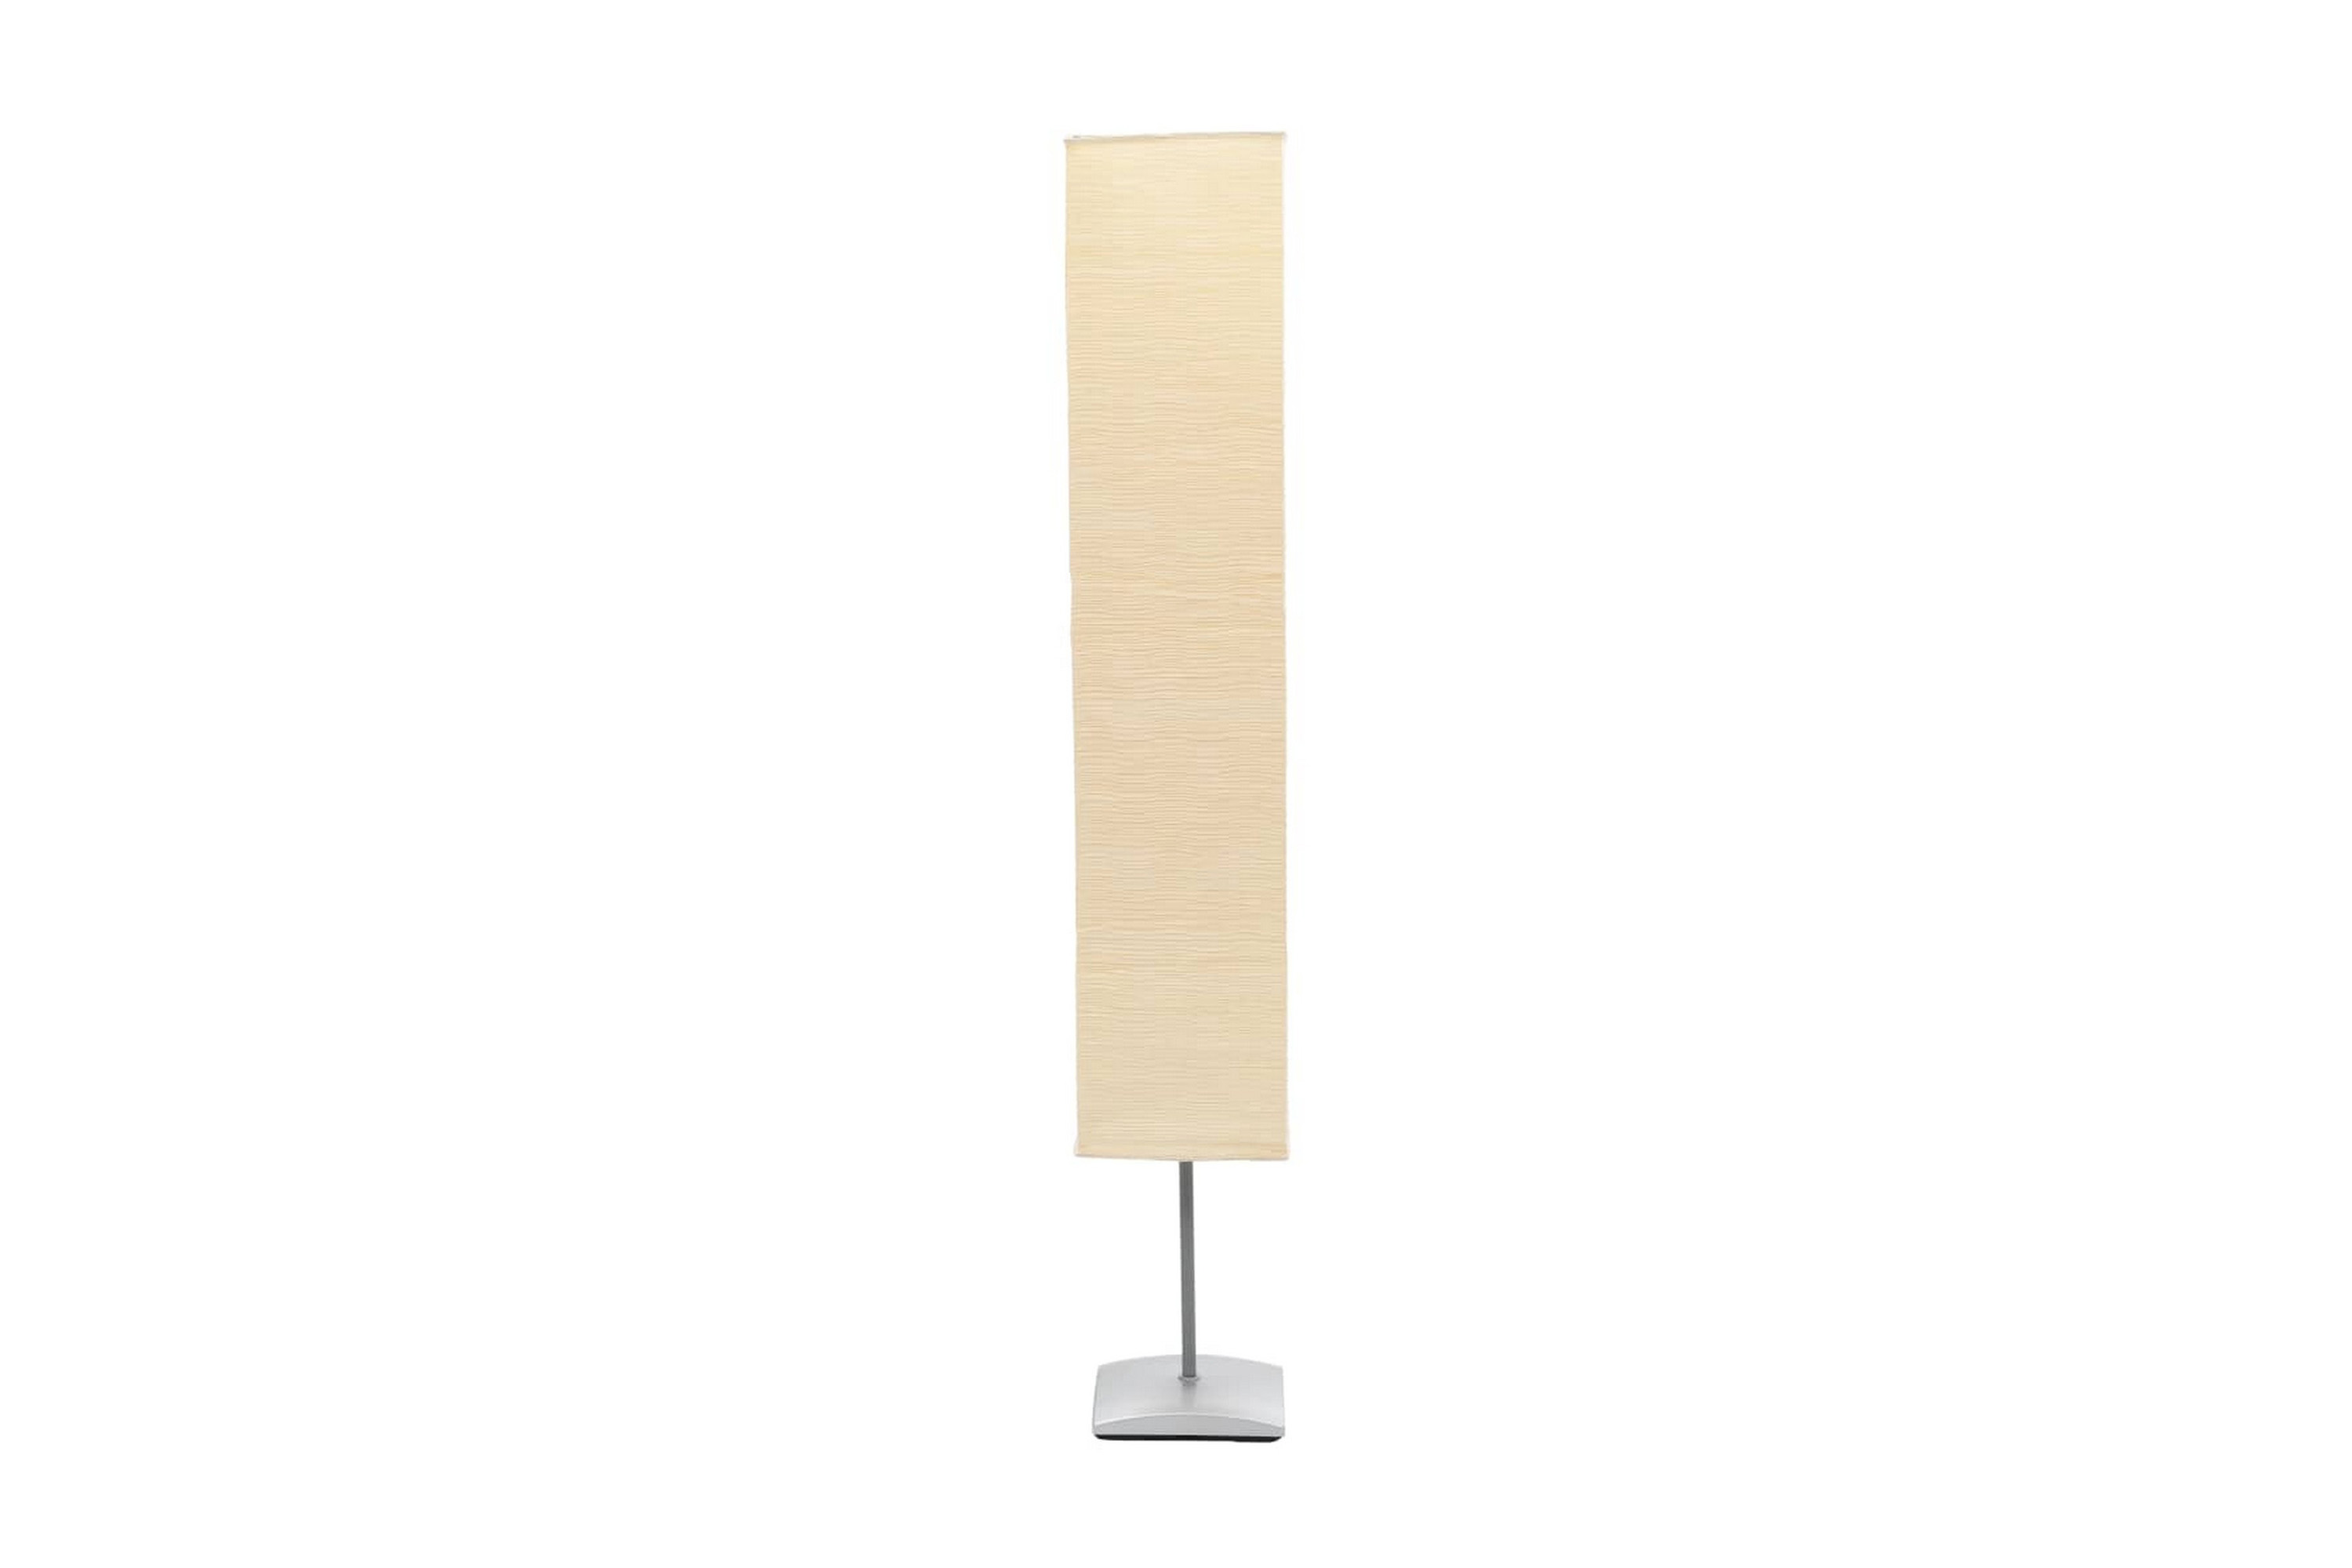 Golvlampa med skärm av rispapper och aluminiumfot 130 cm – Vit